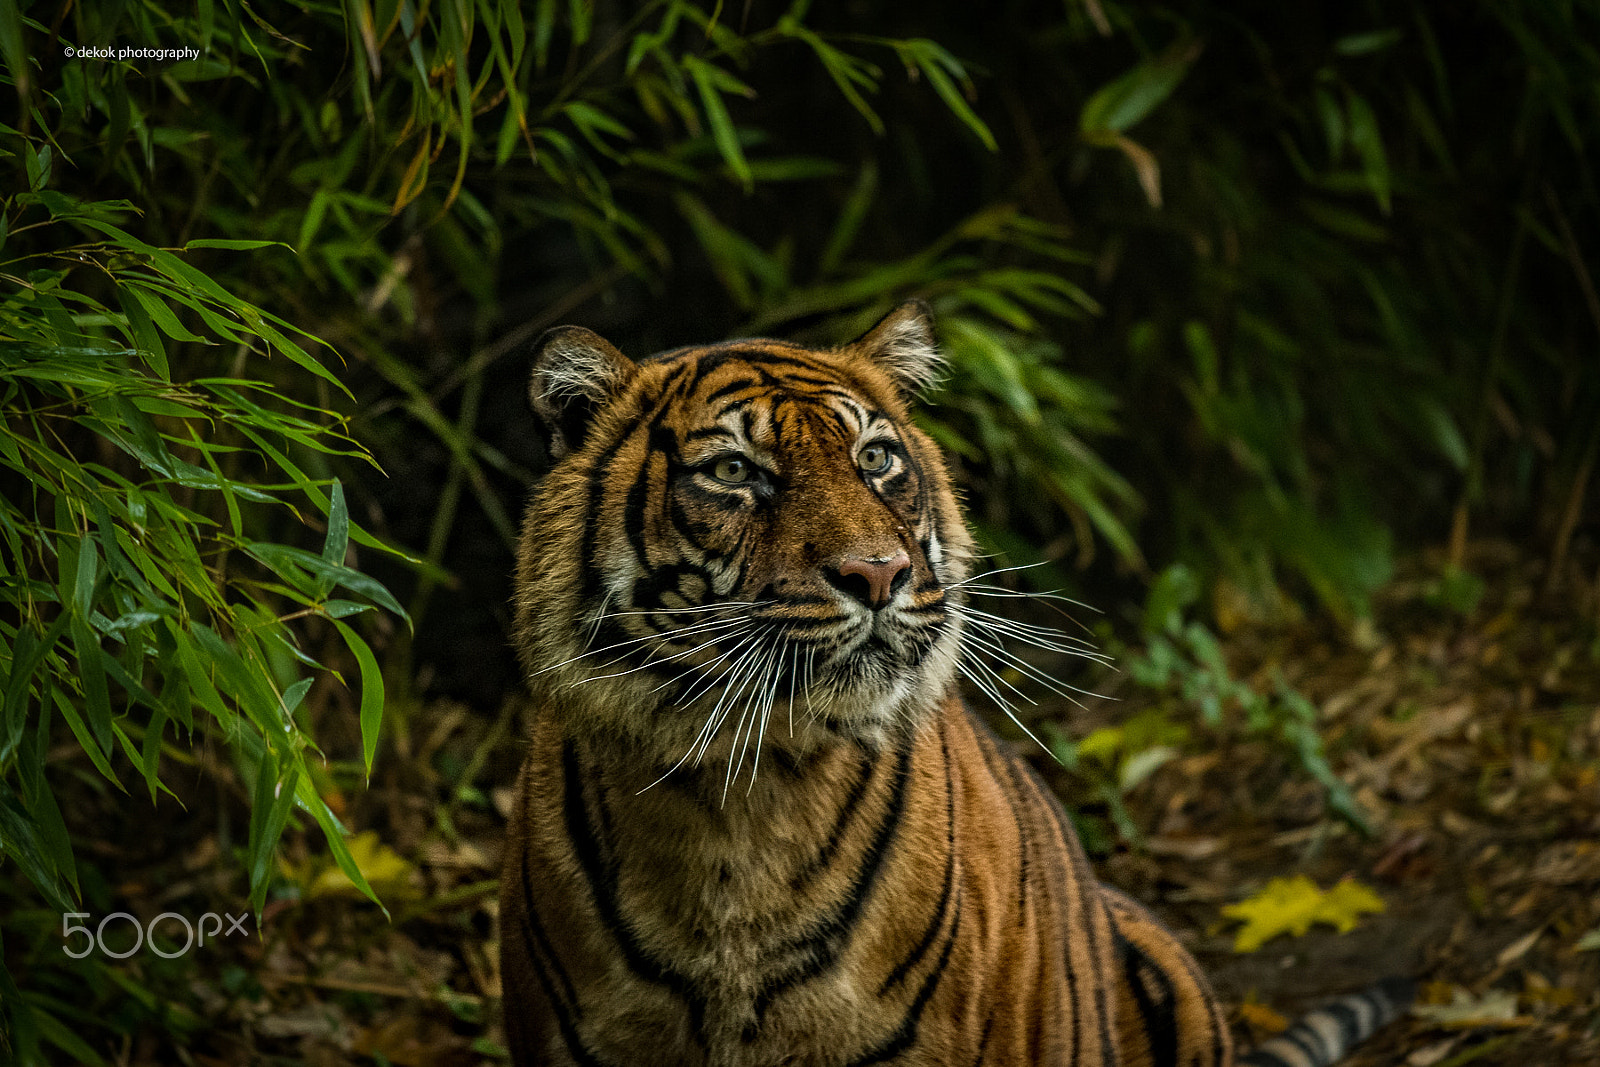 Nikon D500 sample photo. Spectacular sumatran tiger photography